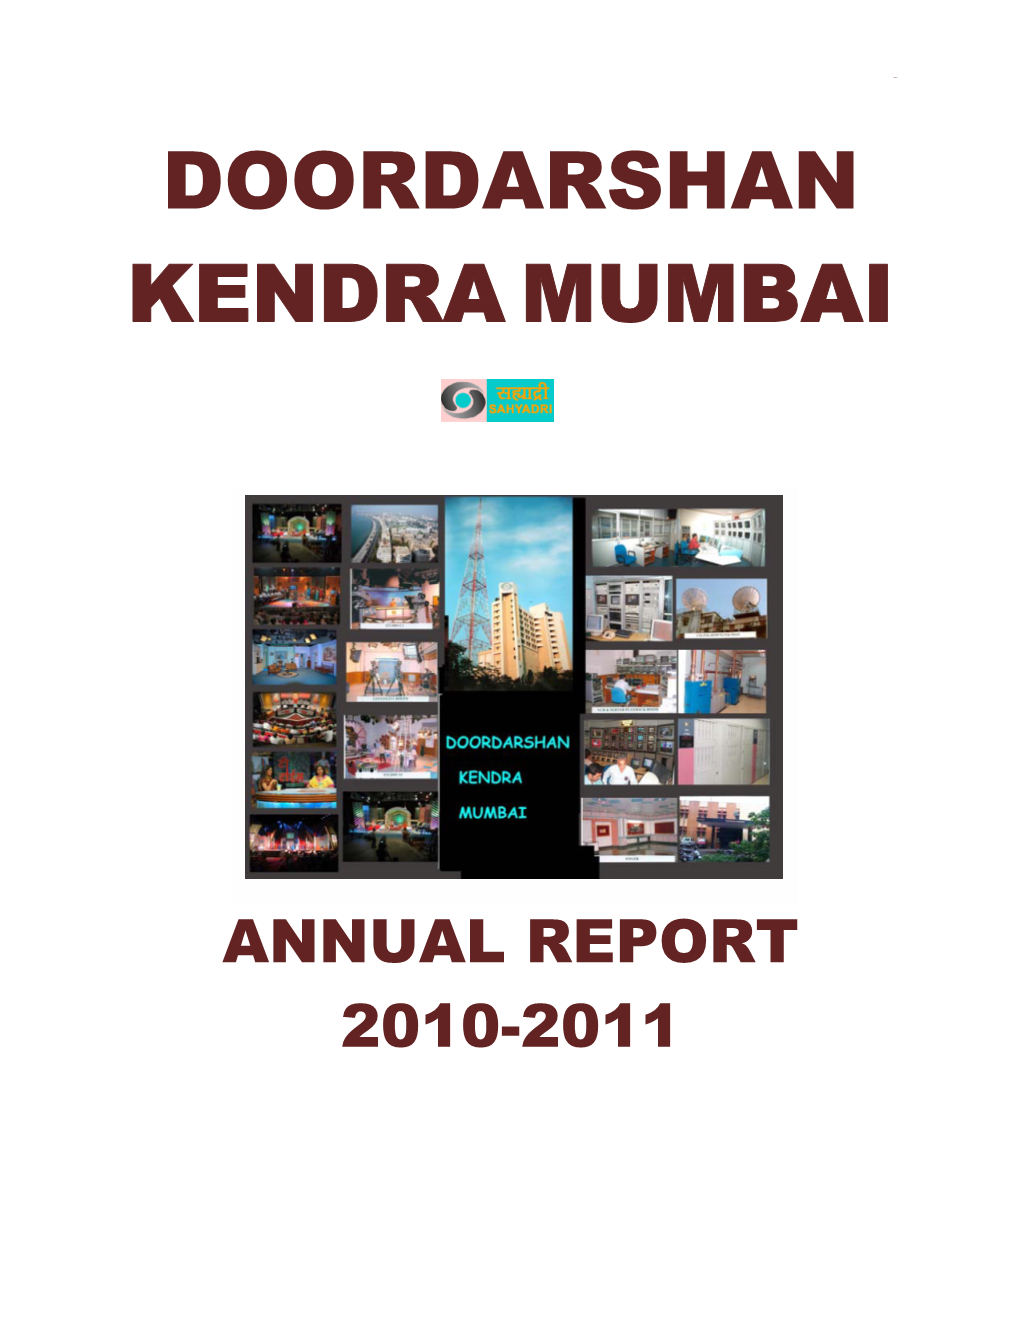 Doordarshan Kendra Mumbai